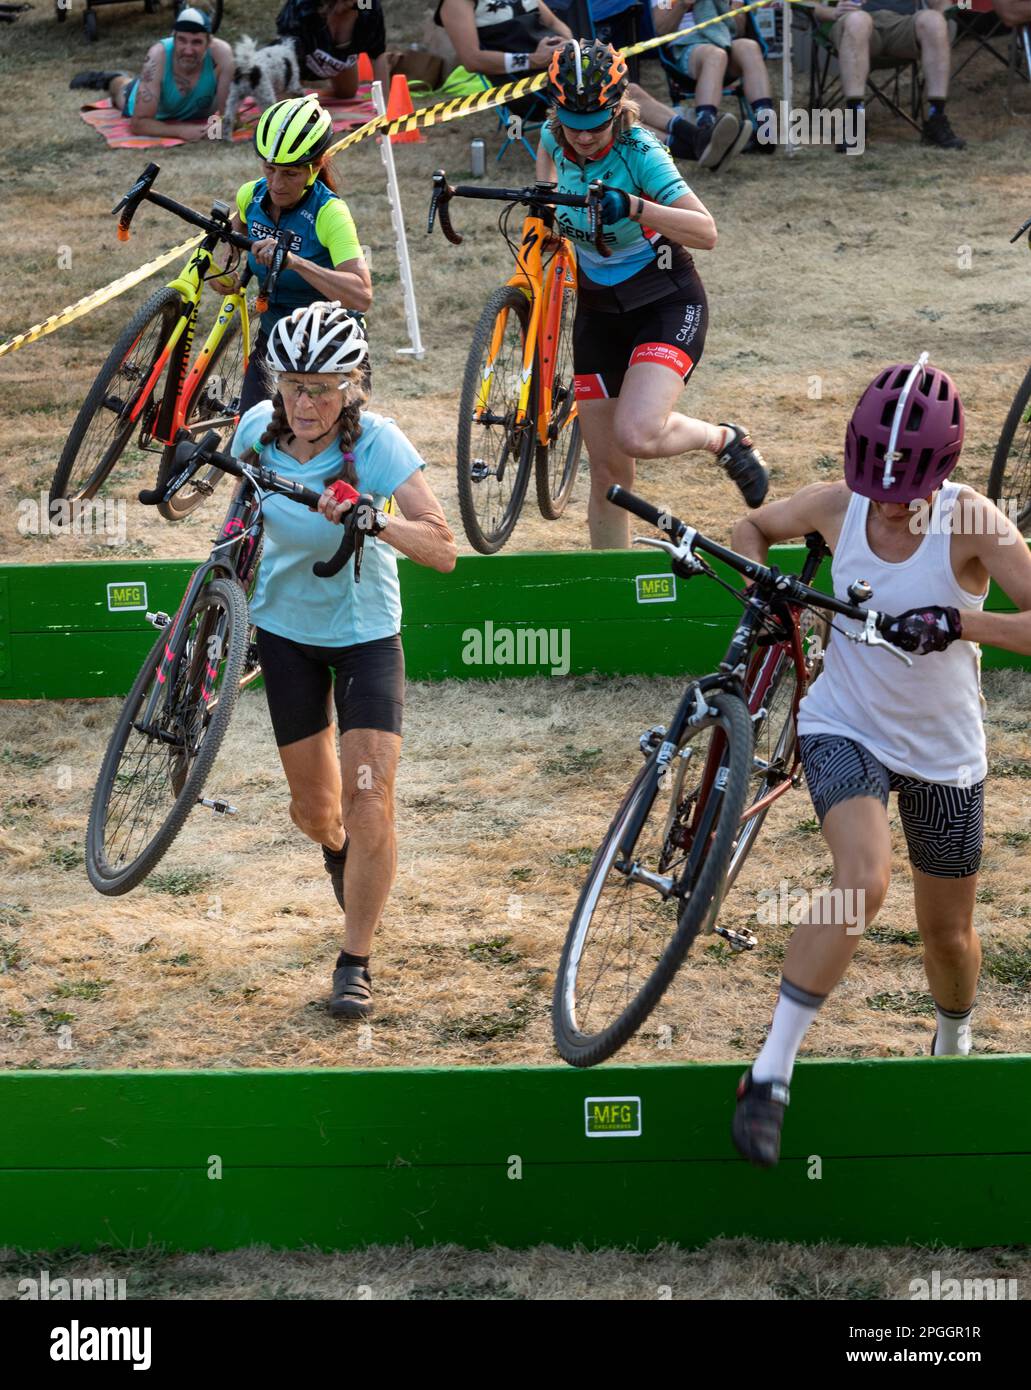 WA24018-00....Washington - Seniorenbürger Vicky Spring tritt in einem Cyclocross-Rennen im Westen Washingtons an. Stockfoto